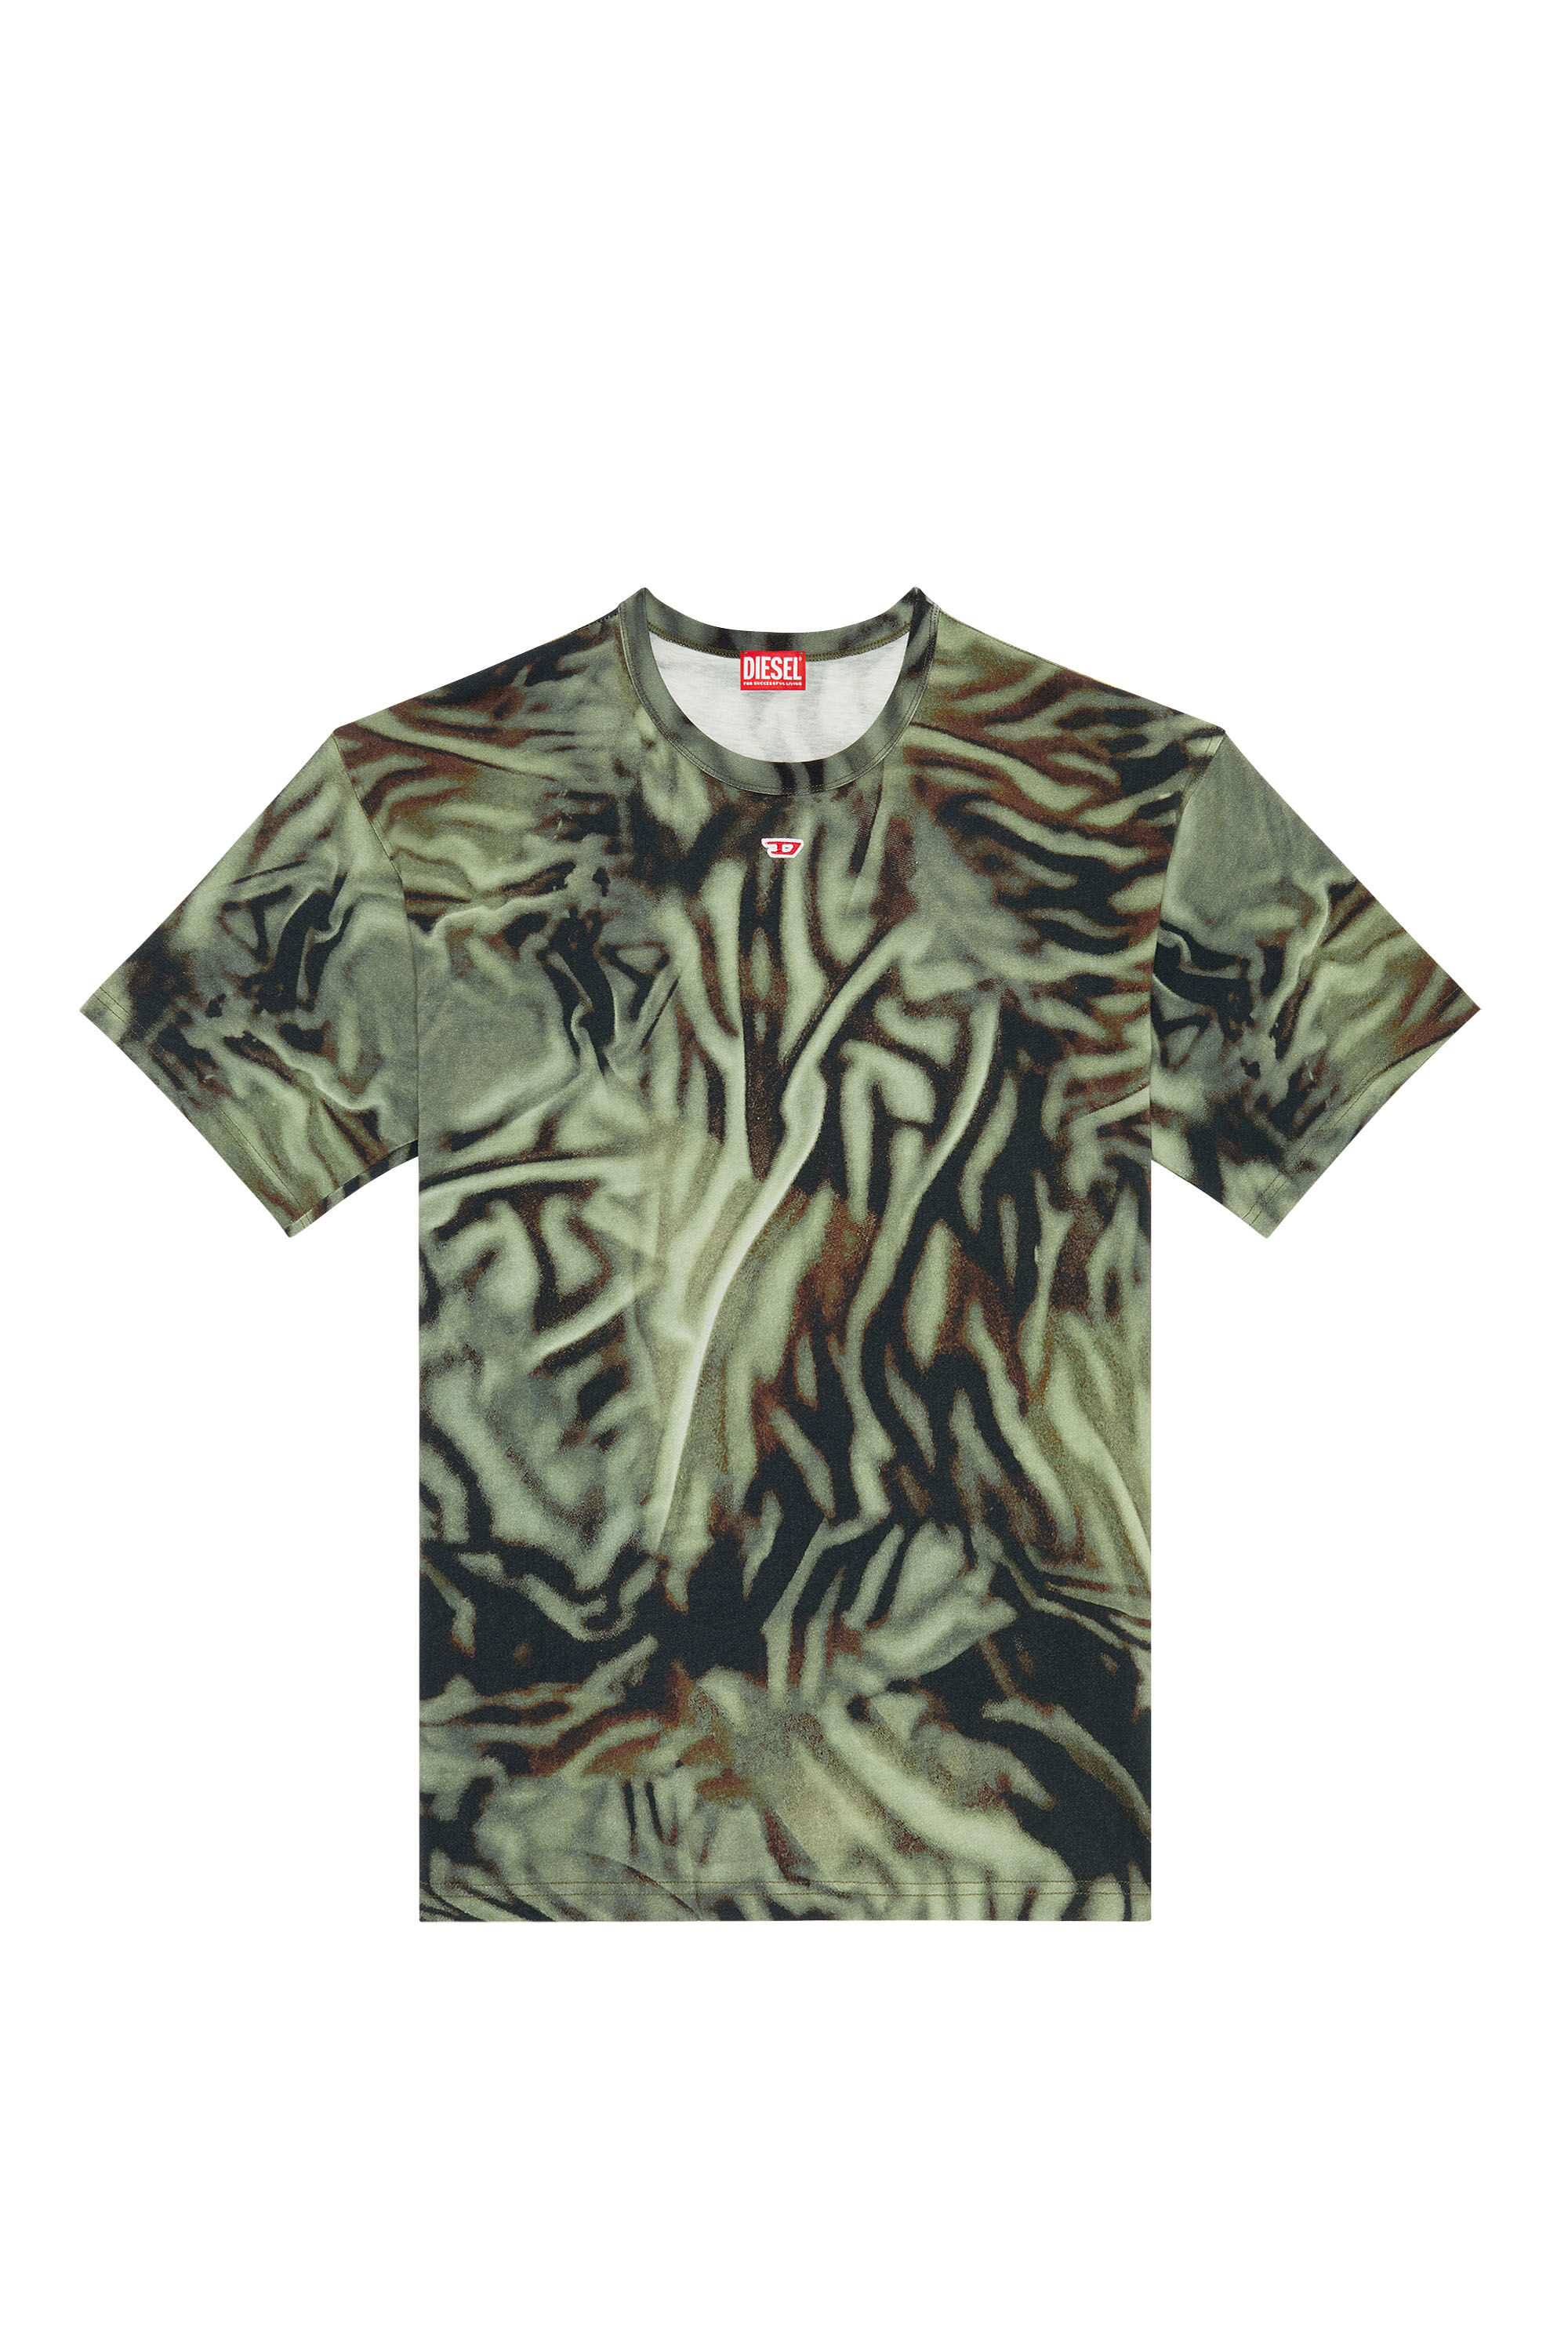 Diesel - T-BOXT-N3, Homme T-shirt avec imprimé camouflage zébré in Vert - Image 2